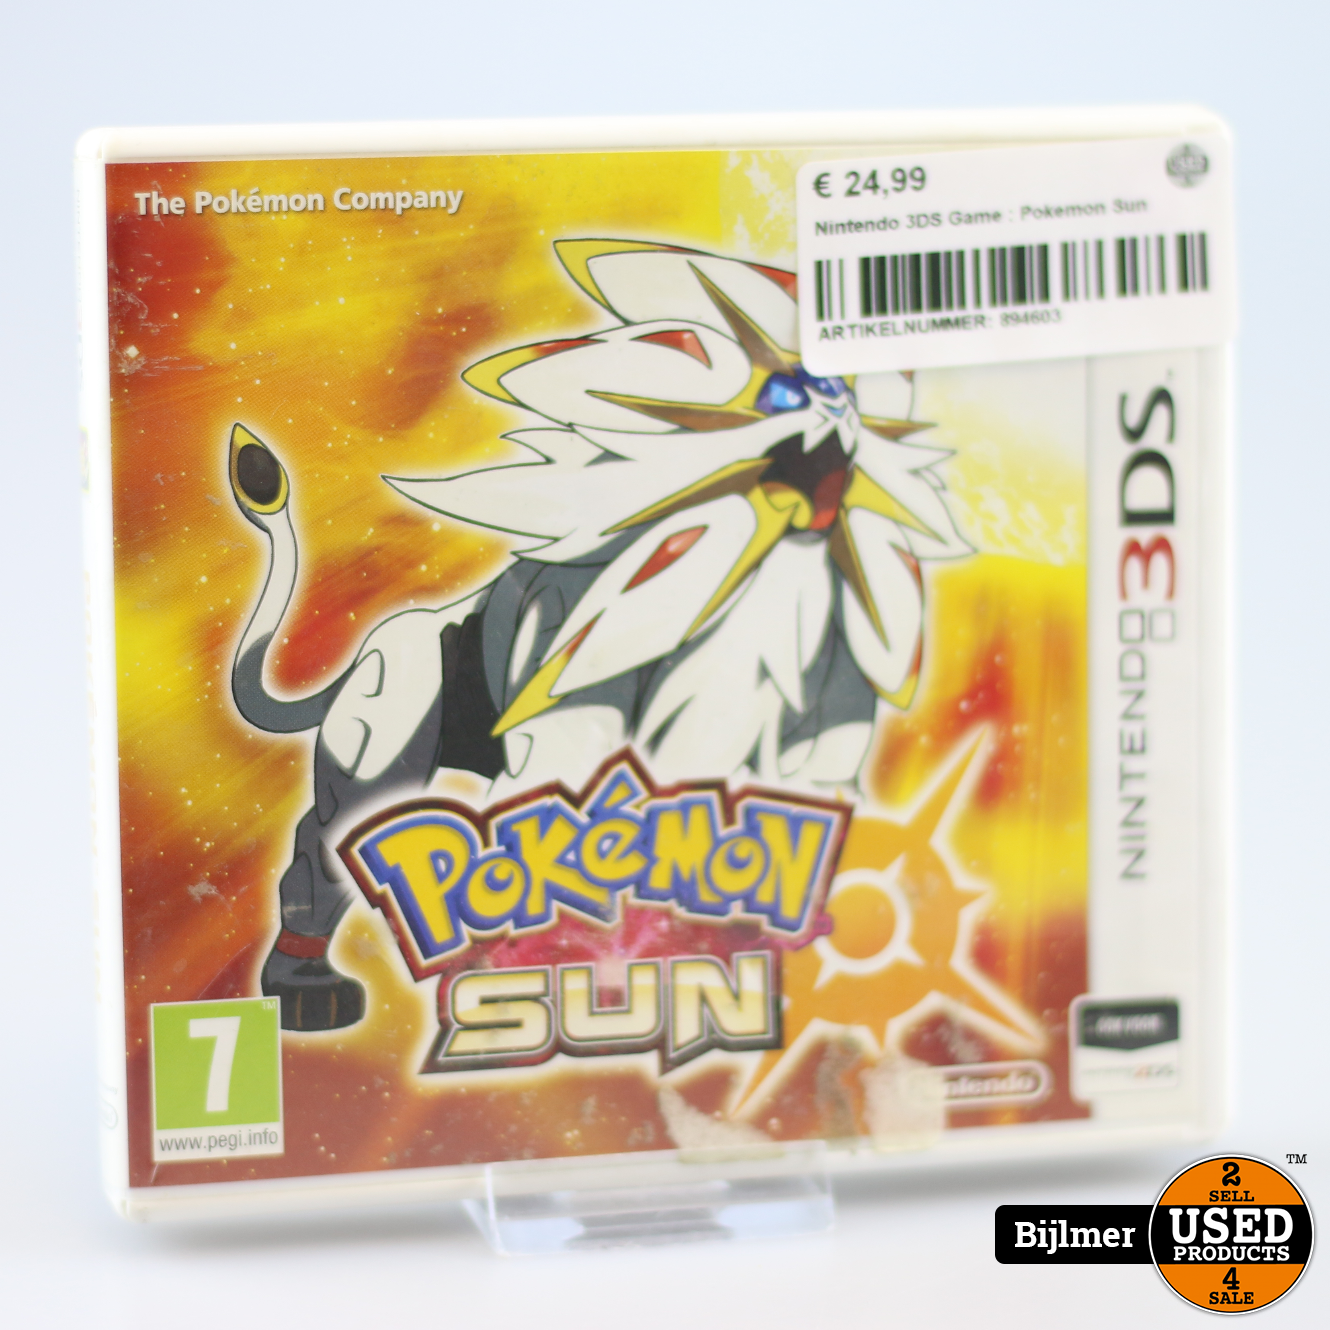 Doe alles met mijn kracht afvoer Betasten Nintendo 3DS Game: Pokemon Sun - Used Products Amsterdam Bijlmer